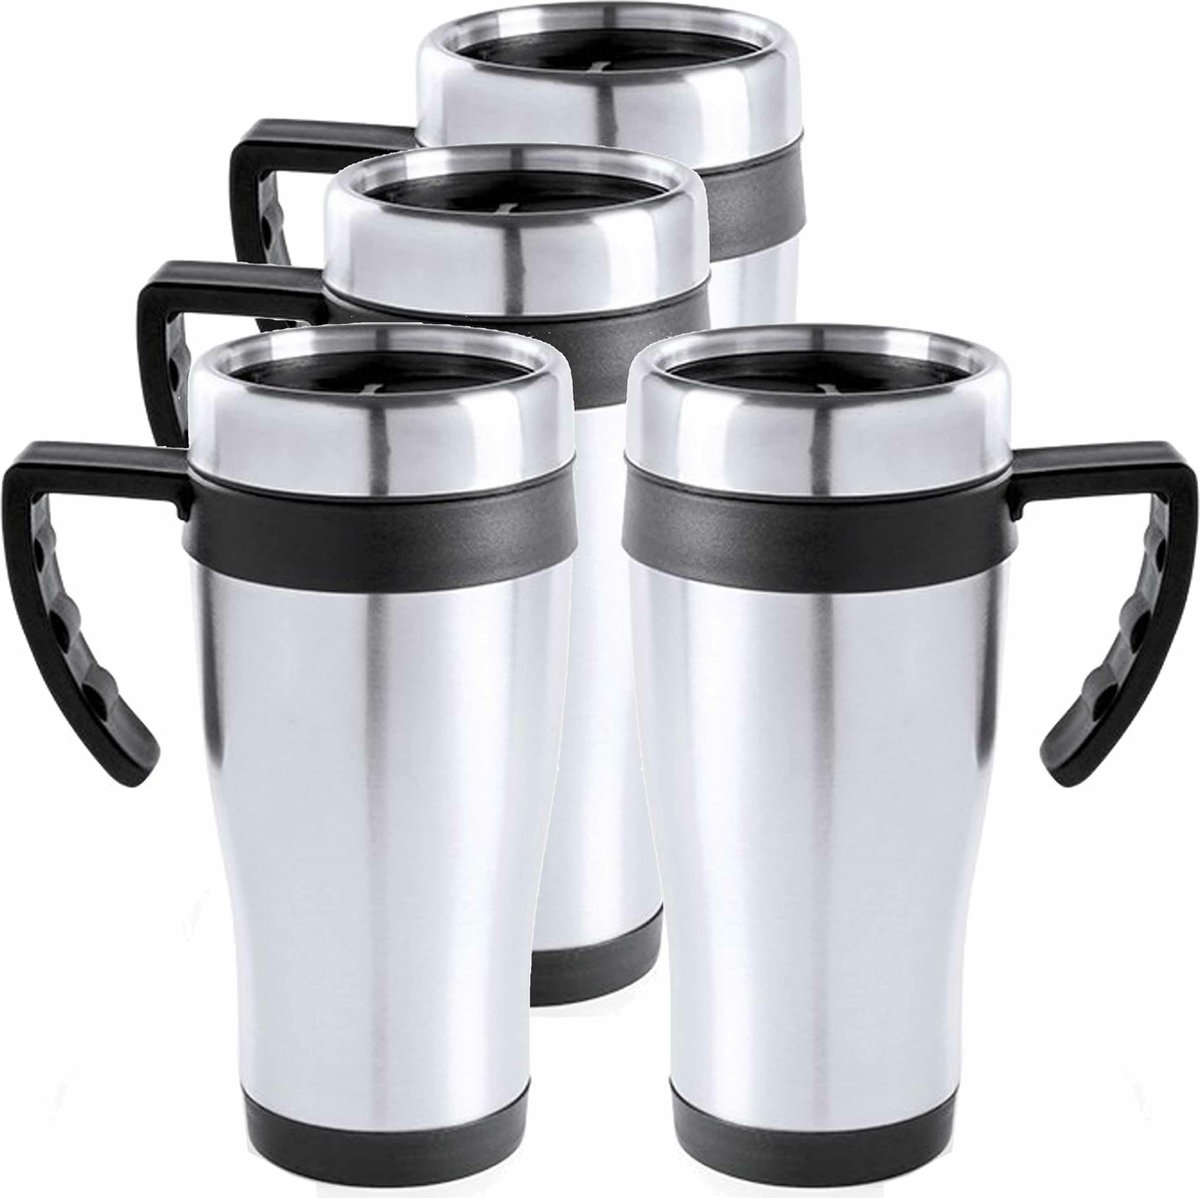 8x stuks rVS thermosbeker/warmhoud koffiebekers zwart 500 ml - Isoleerbekers/reisbekers